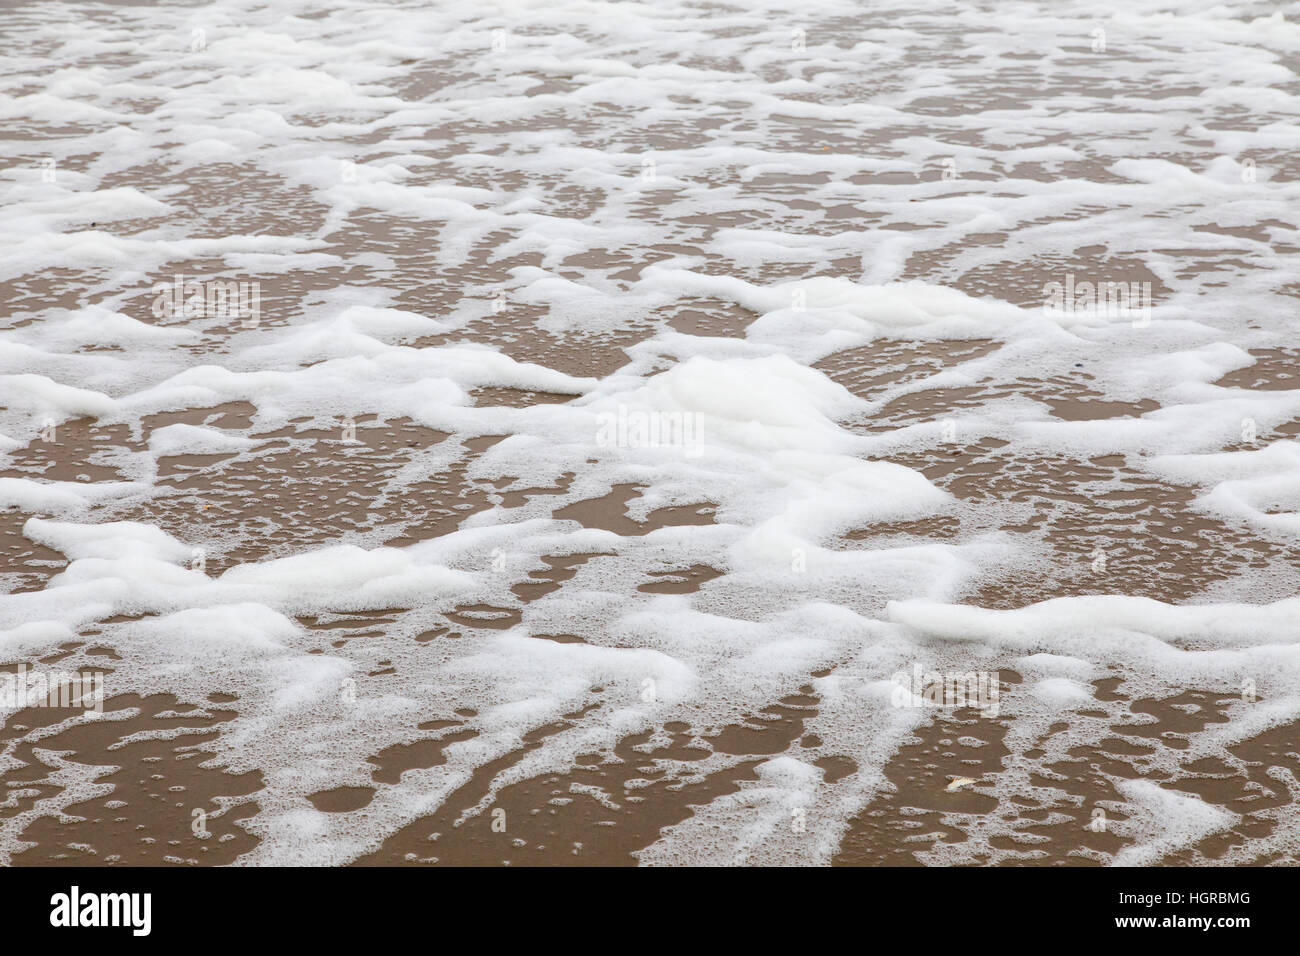 Spume / sea foam / ocean foam / beach foam formed during stormy